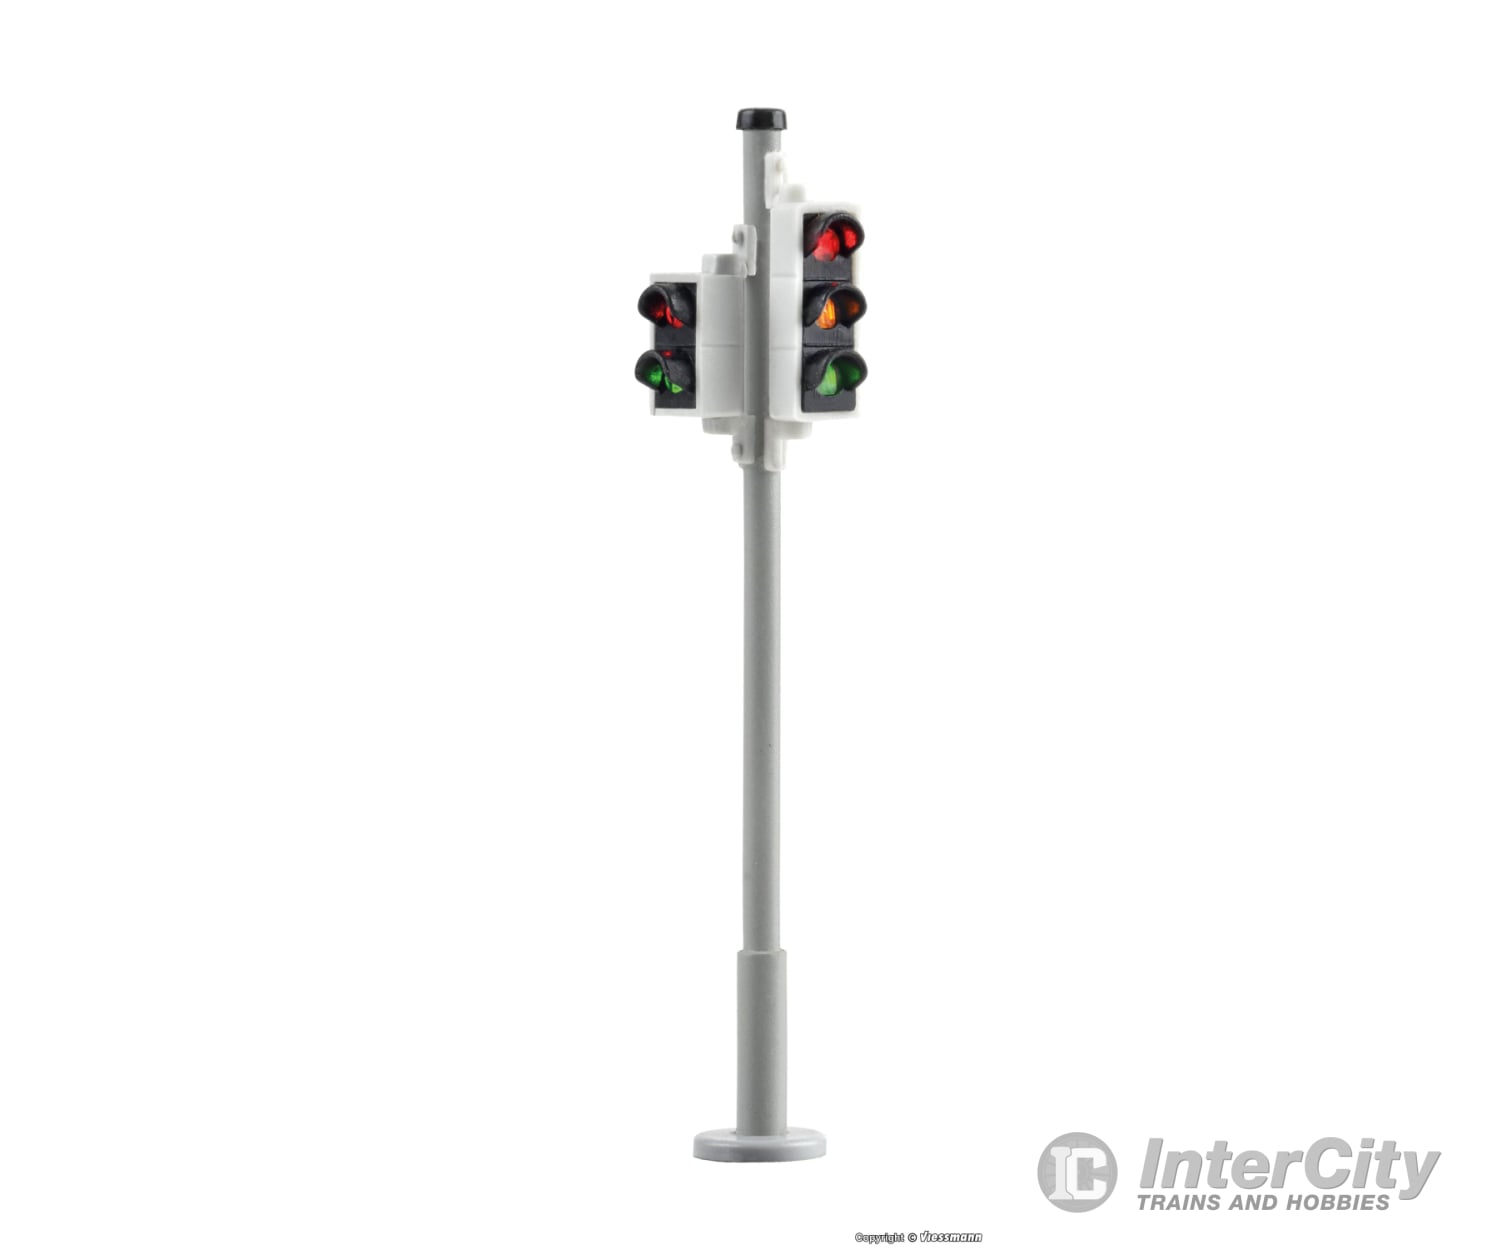 Viessmann Ho 5095 Traffic Light With Pedestrian Signals - 2 Pcs Lights & Electronics